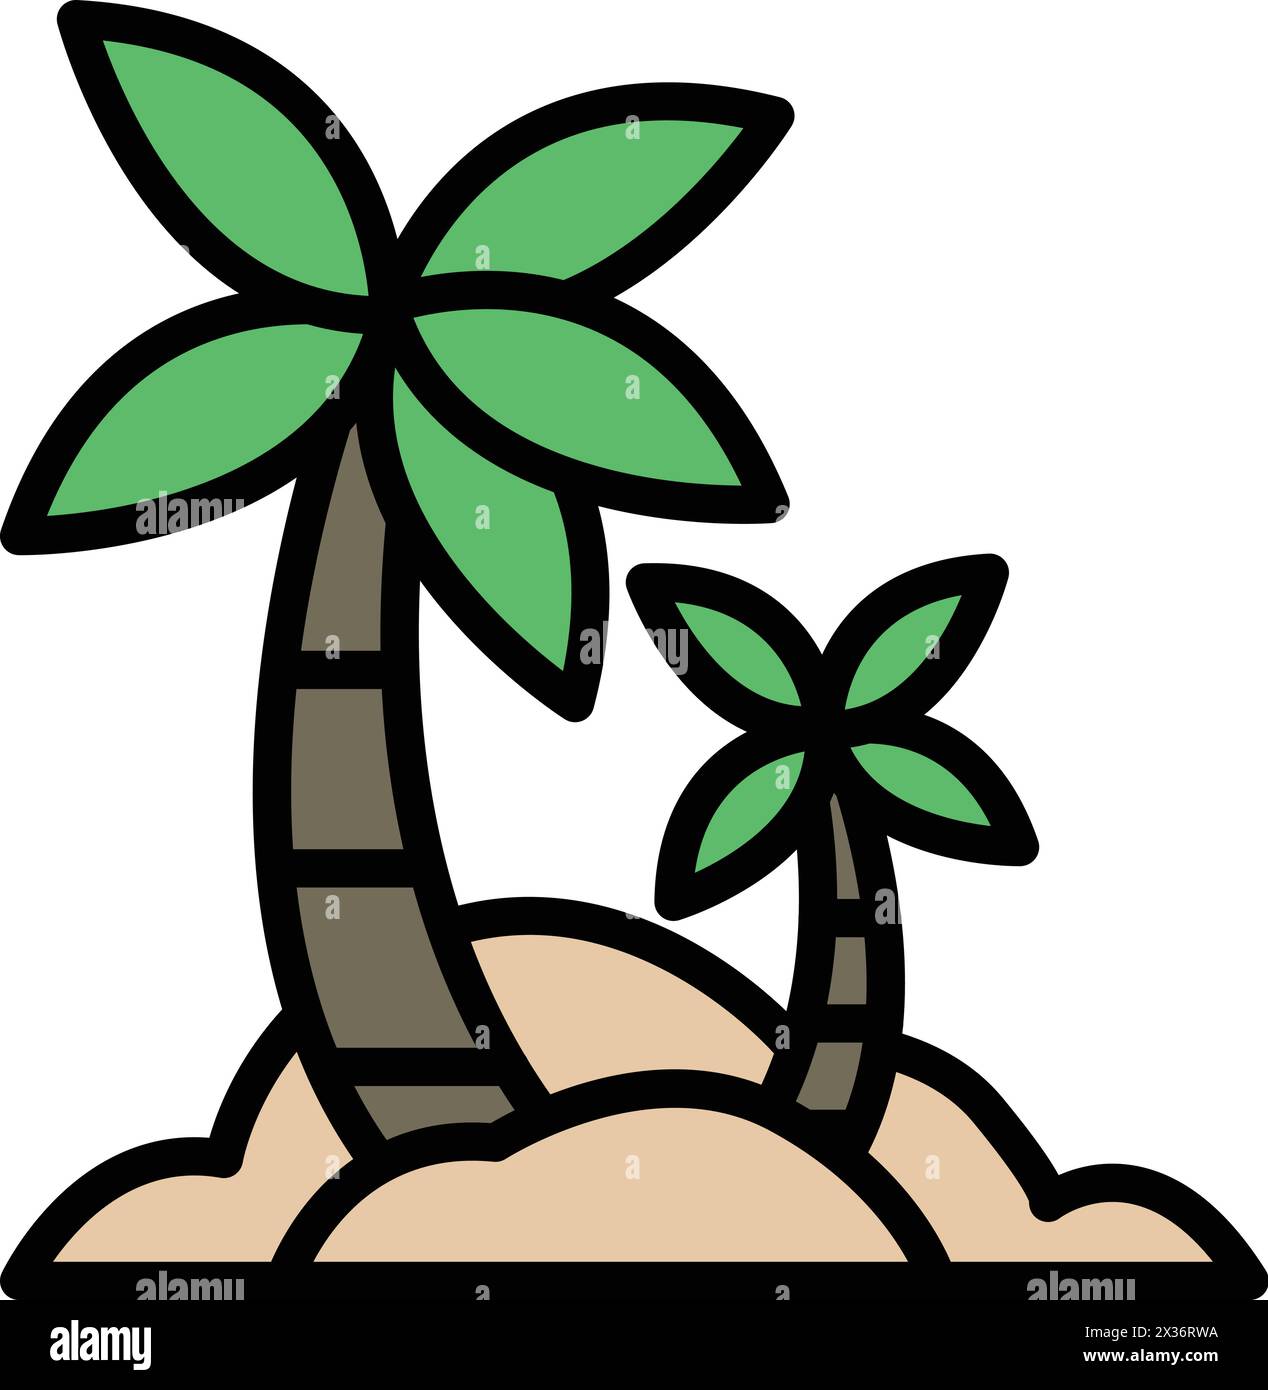 Zwei Palmen stehen an einem Sandstrand. Die Palmen sind hoch und grün und bilden den Hauptfokus des Bildes. Der Strand ist friedlich und Stock Vektor